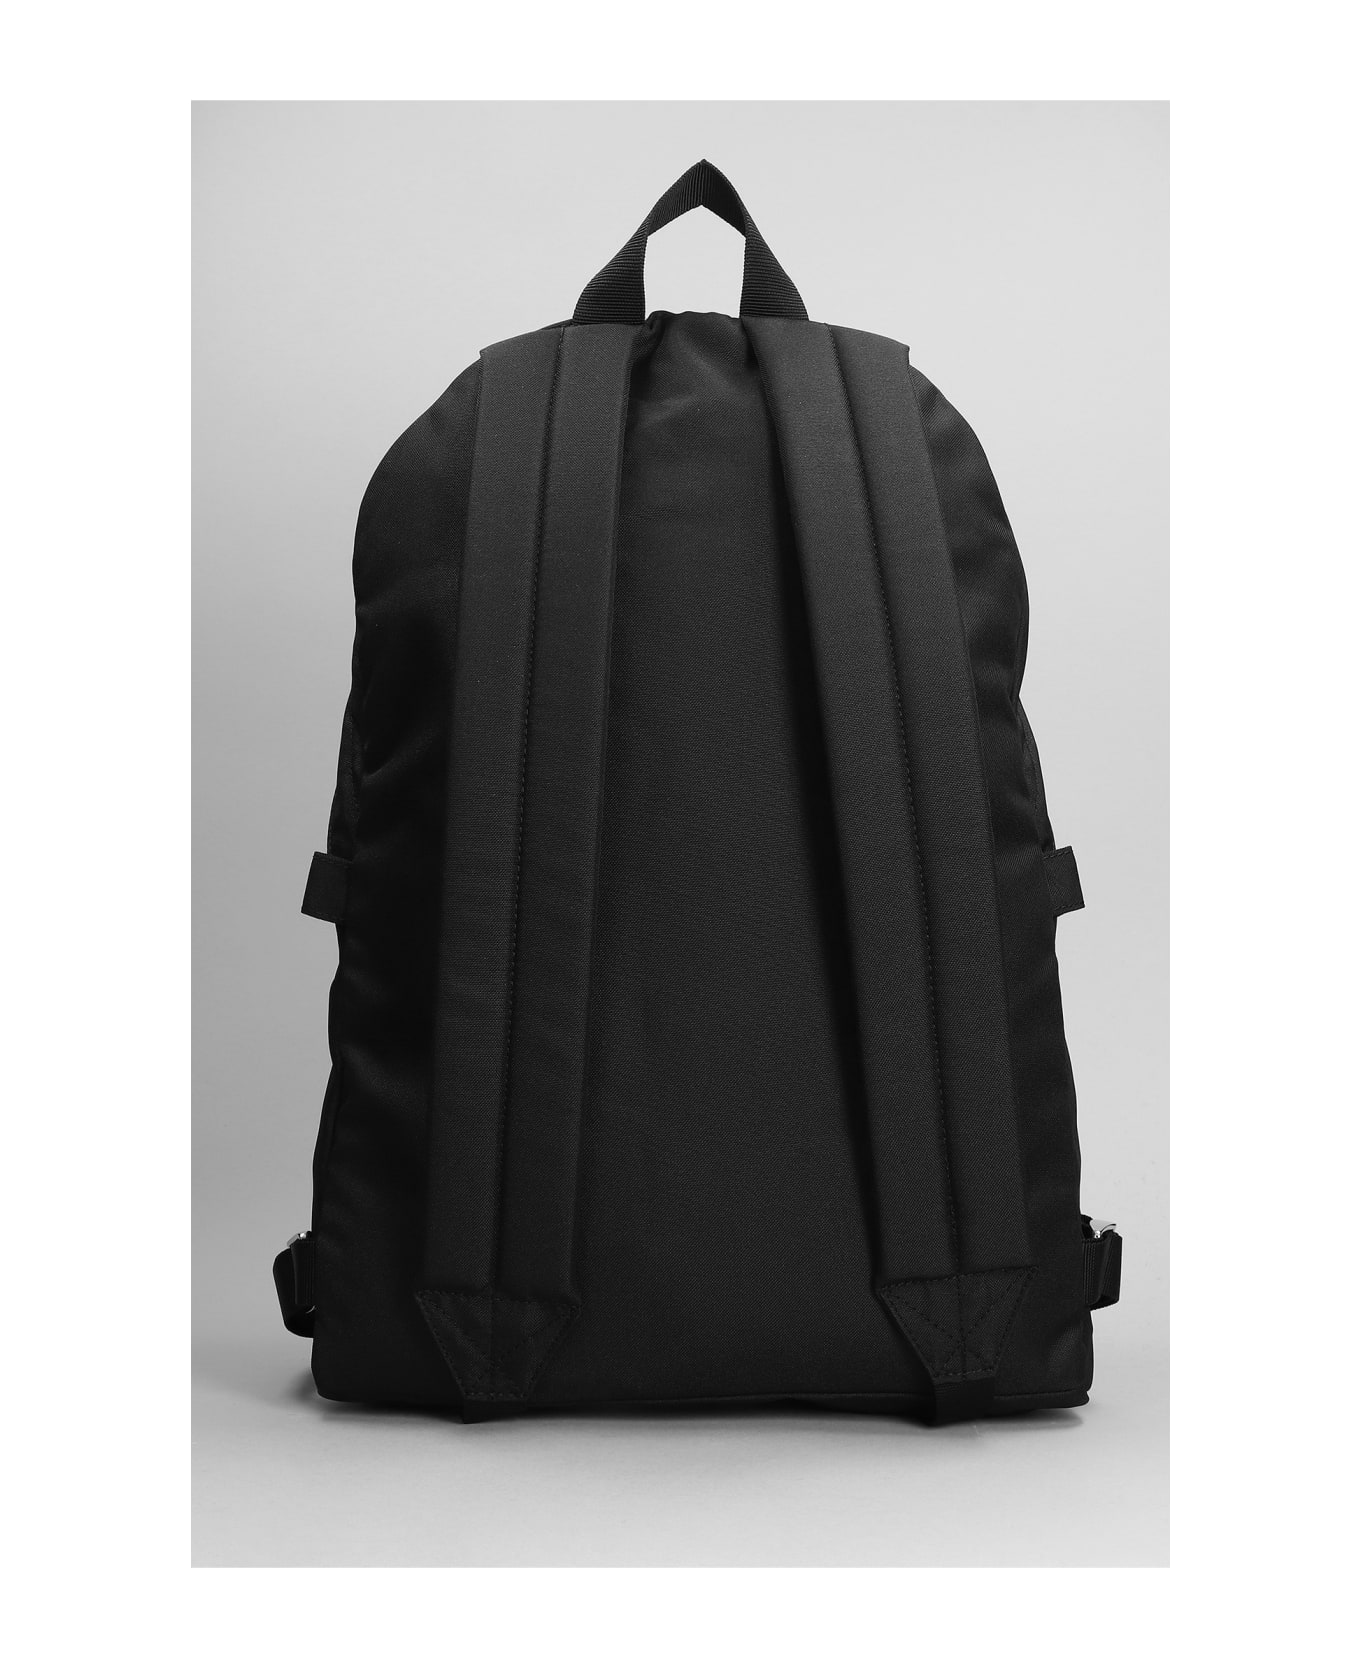 Kenzo Shoulder Bag In Black Polyester - black